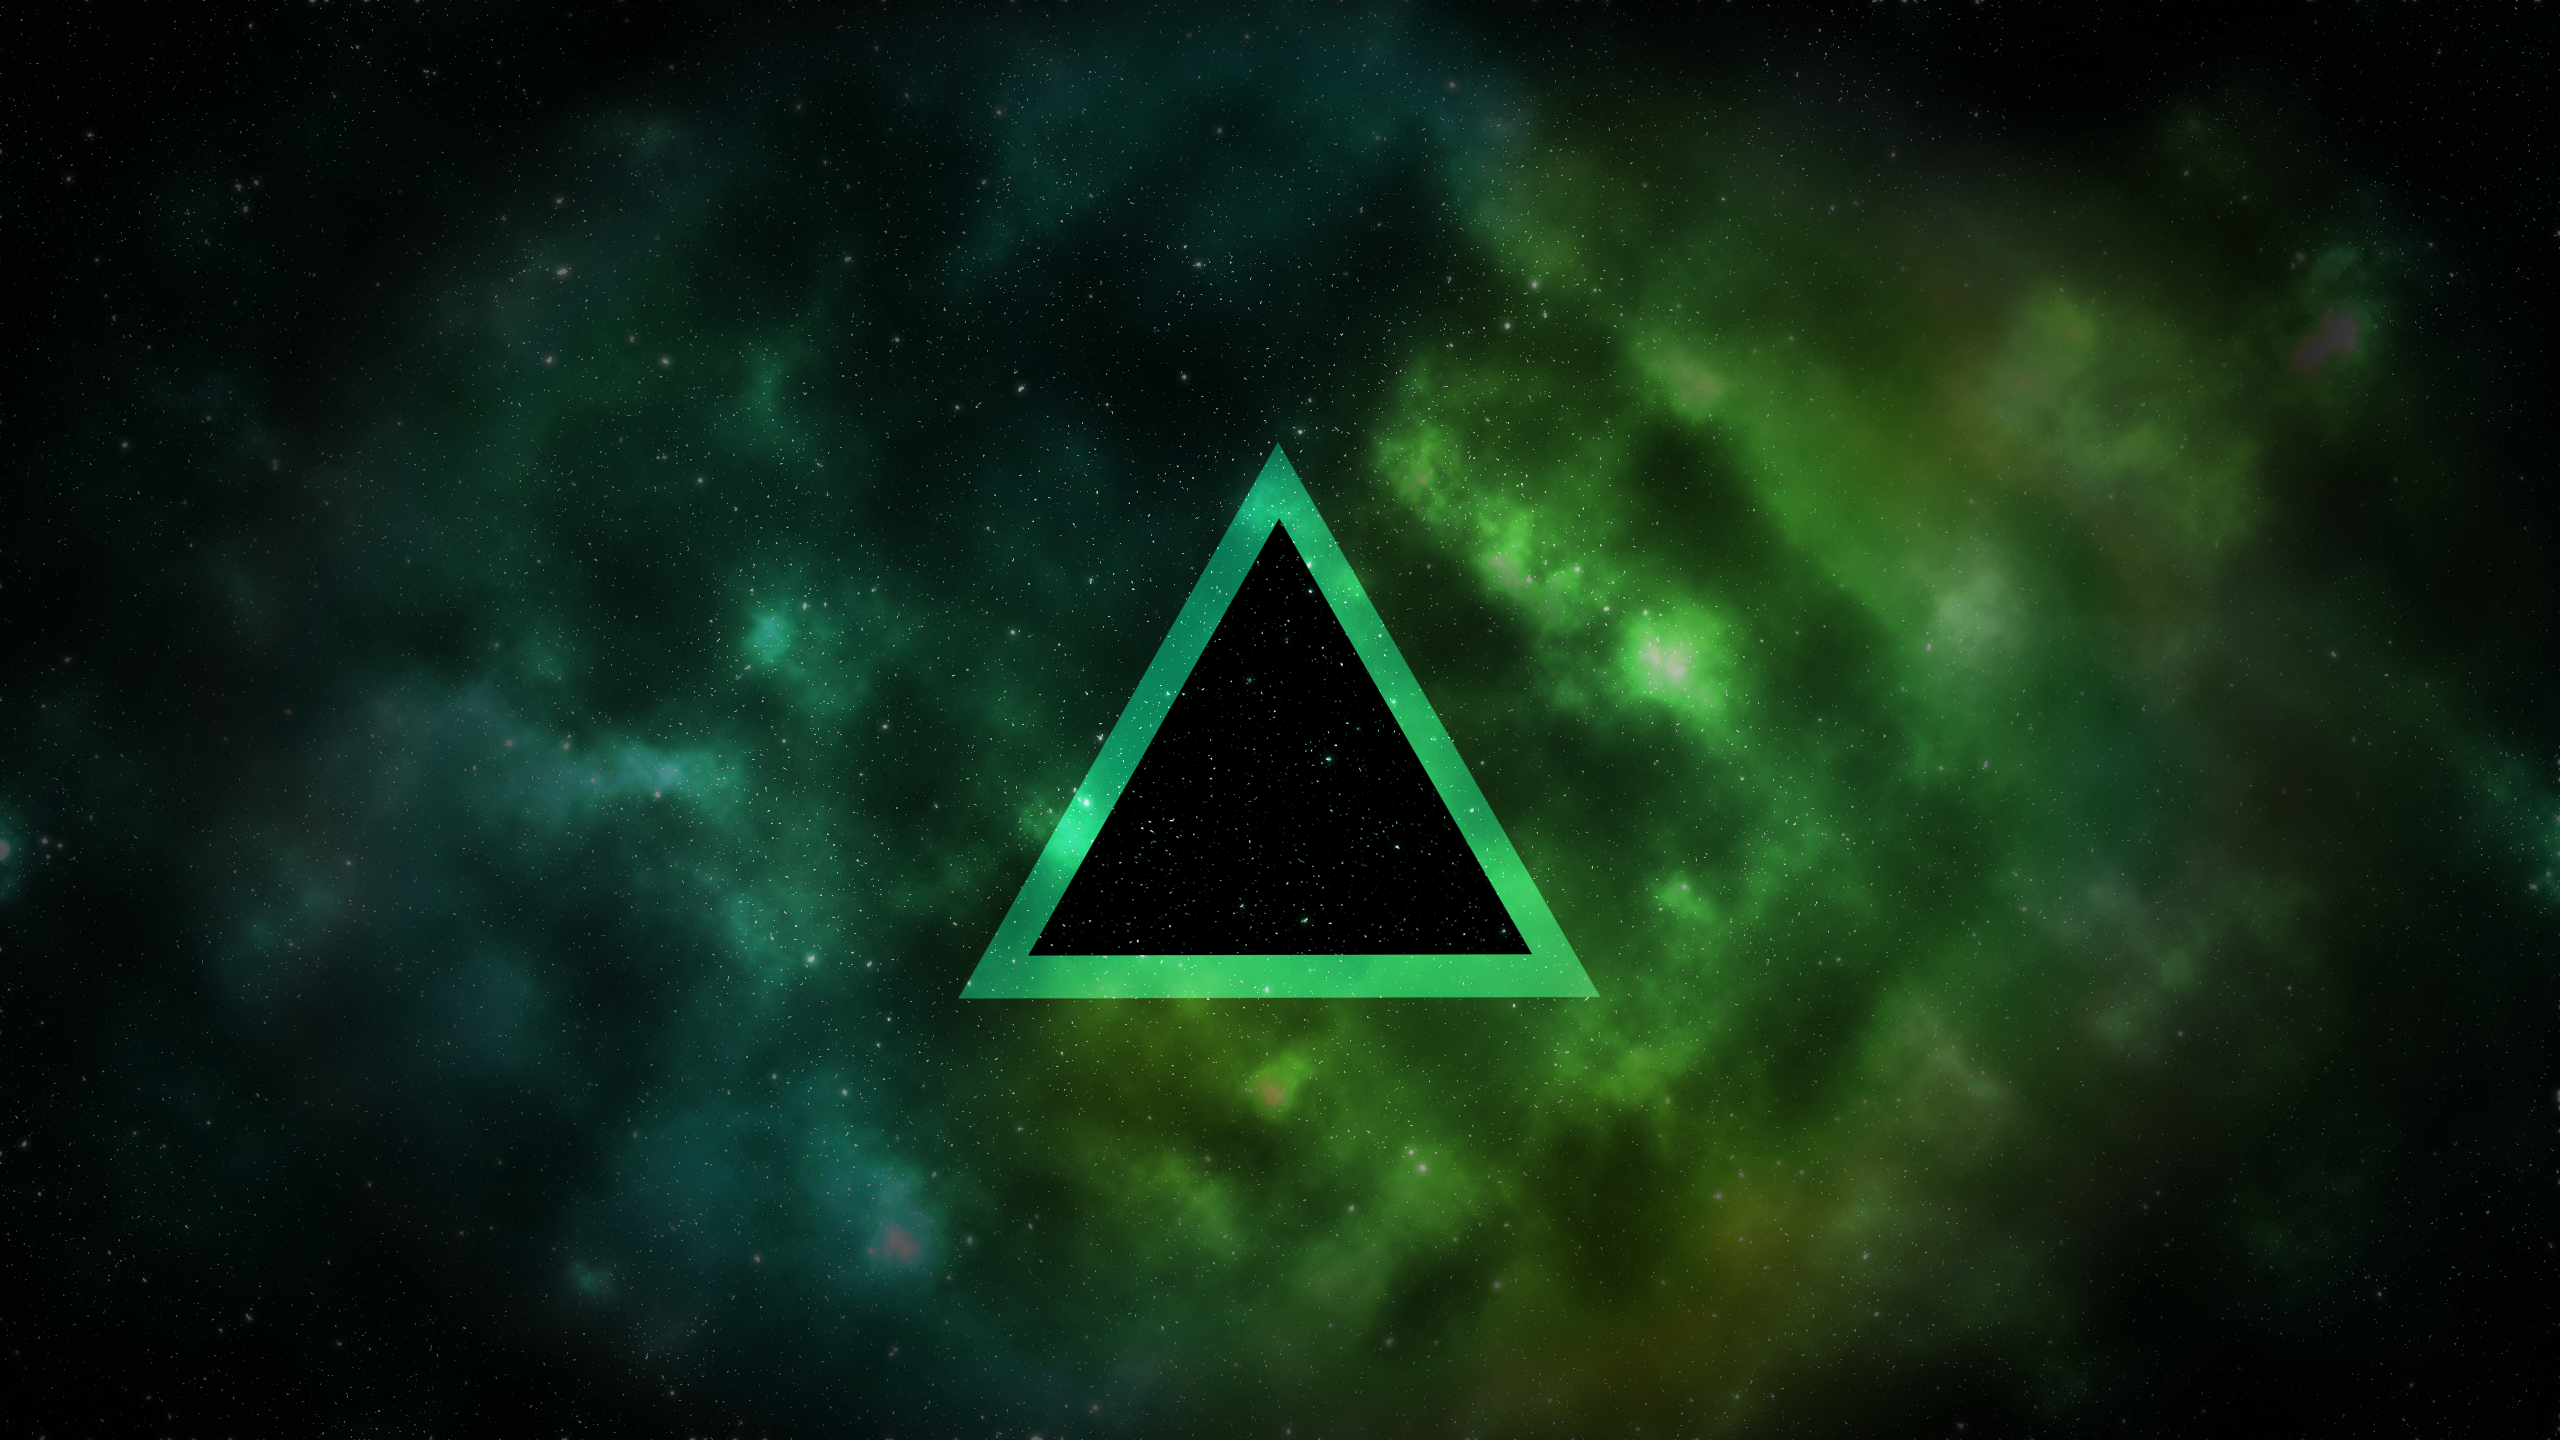 General 2560x1440 space stars triangle green digital art